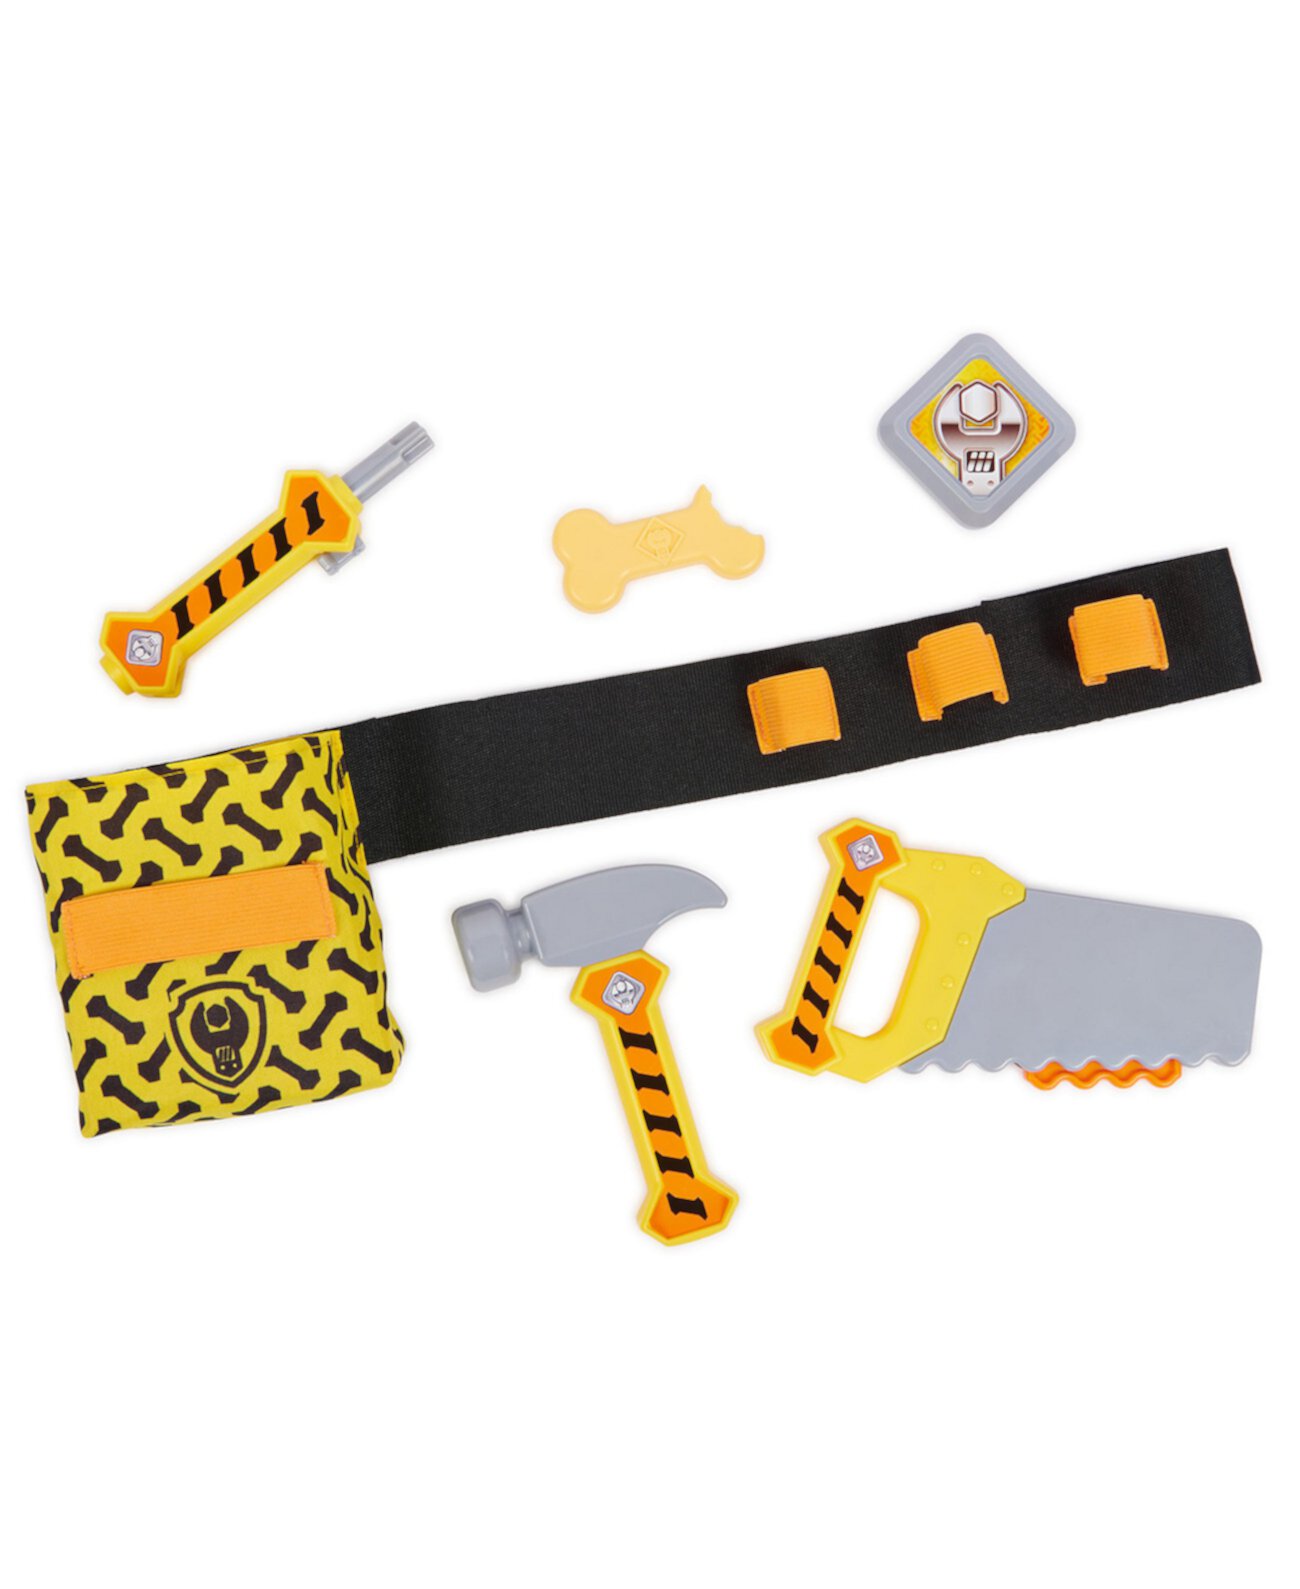 Пояс для строительных инструментов Rubble с набором детских инструментов из 6 предметов Rubble & Crew